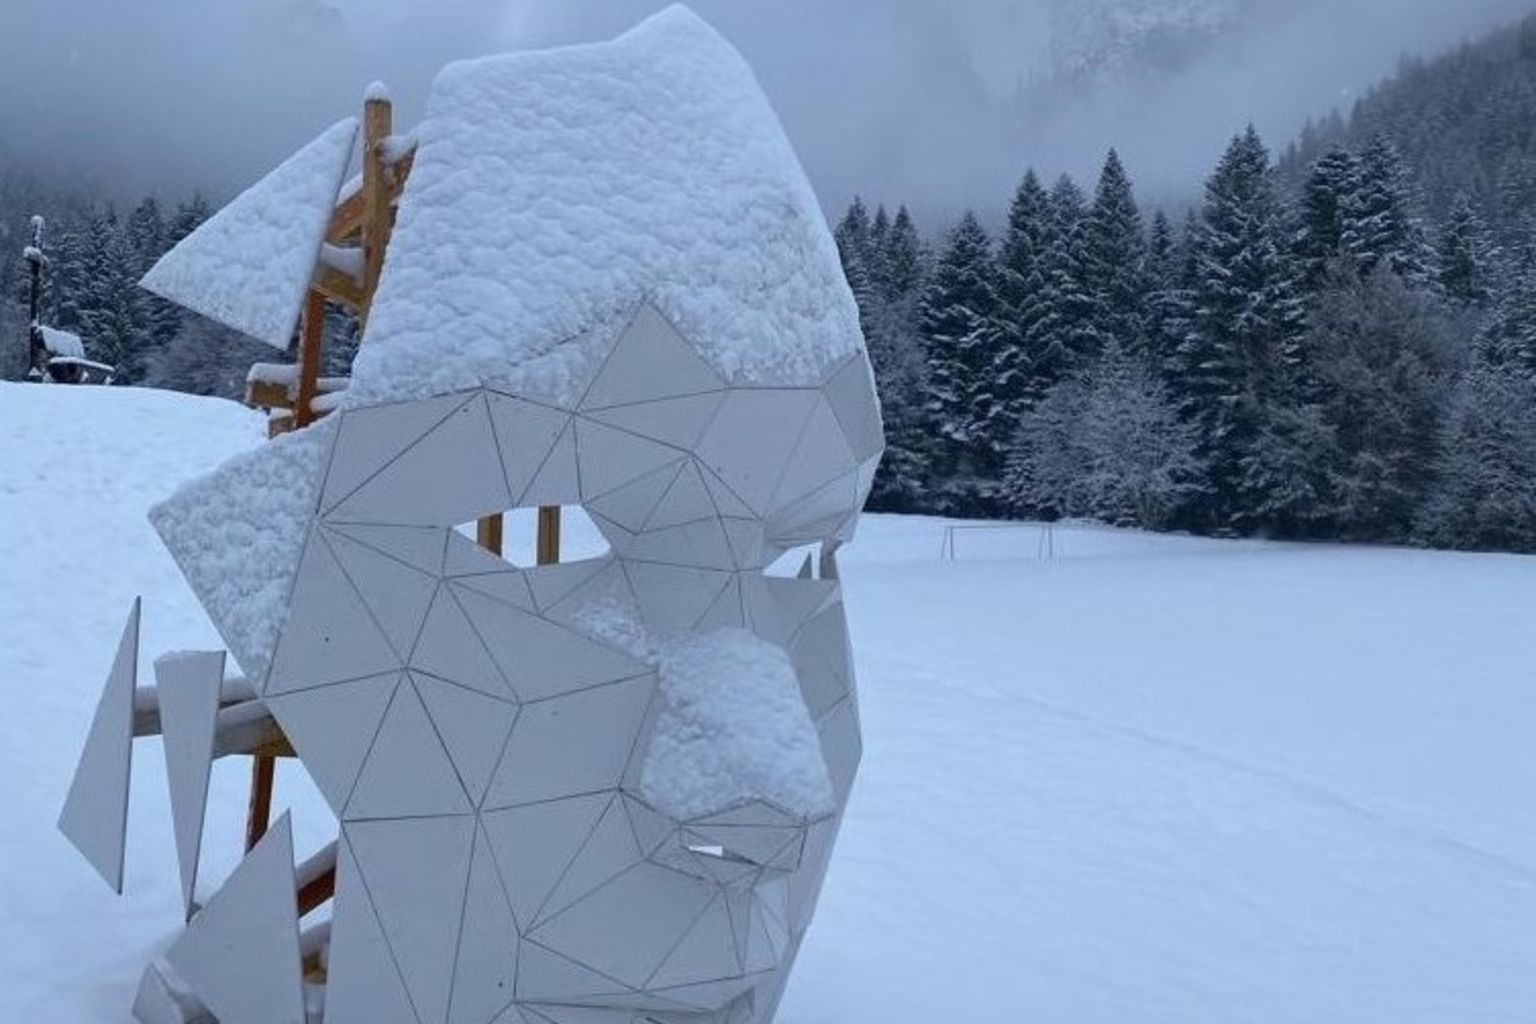 Sculpture Torgon dans la neige, Valais, Suisse